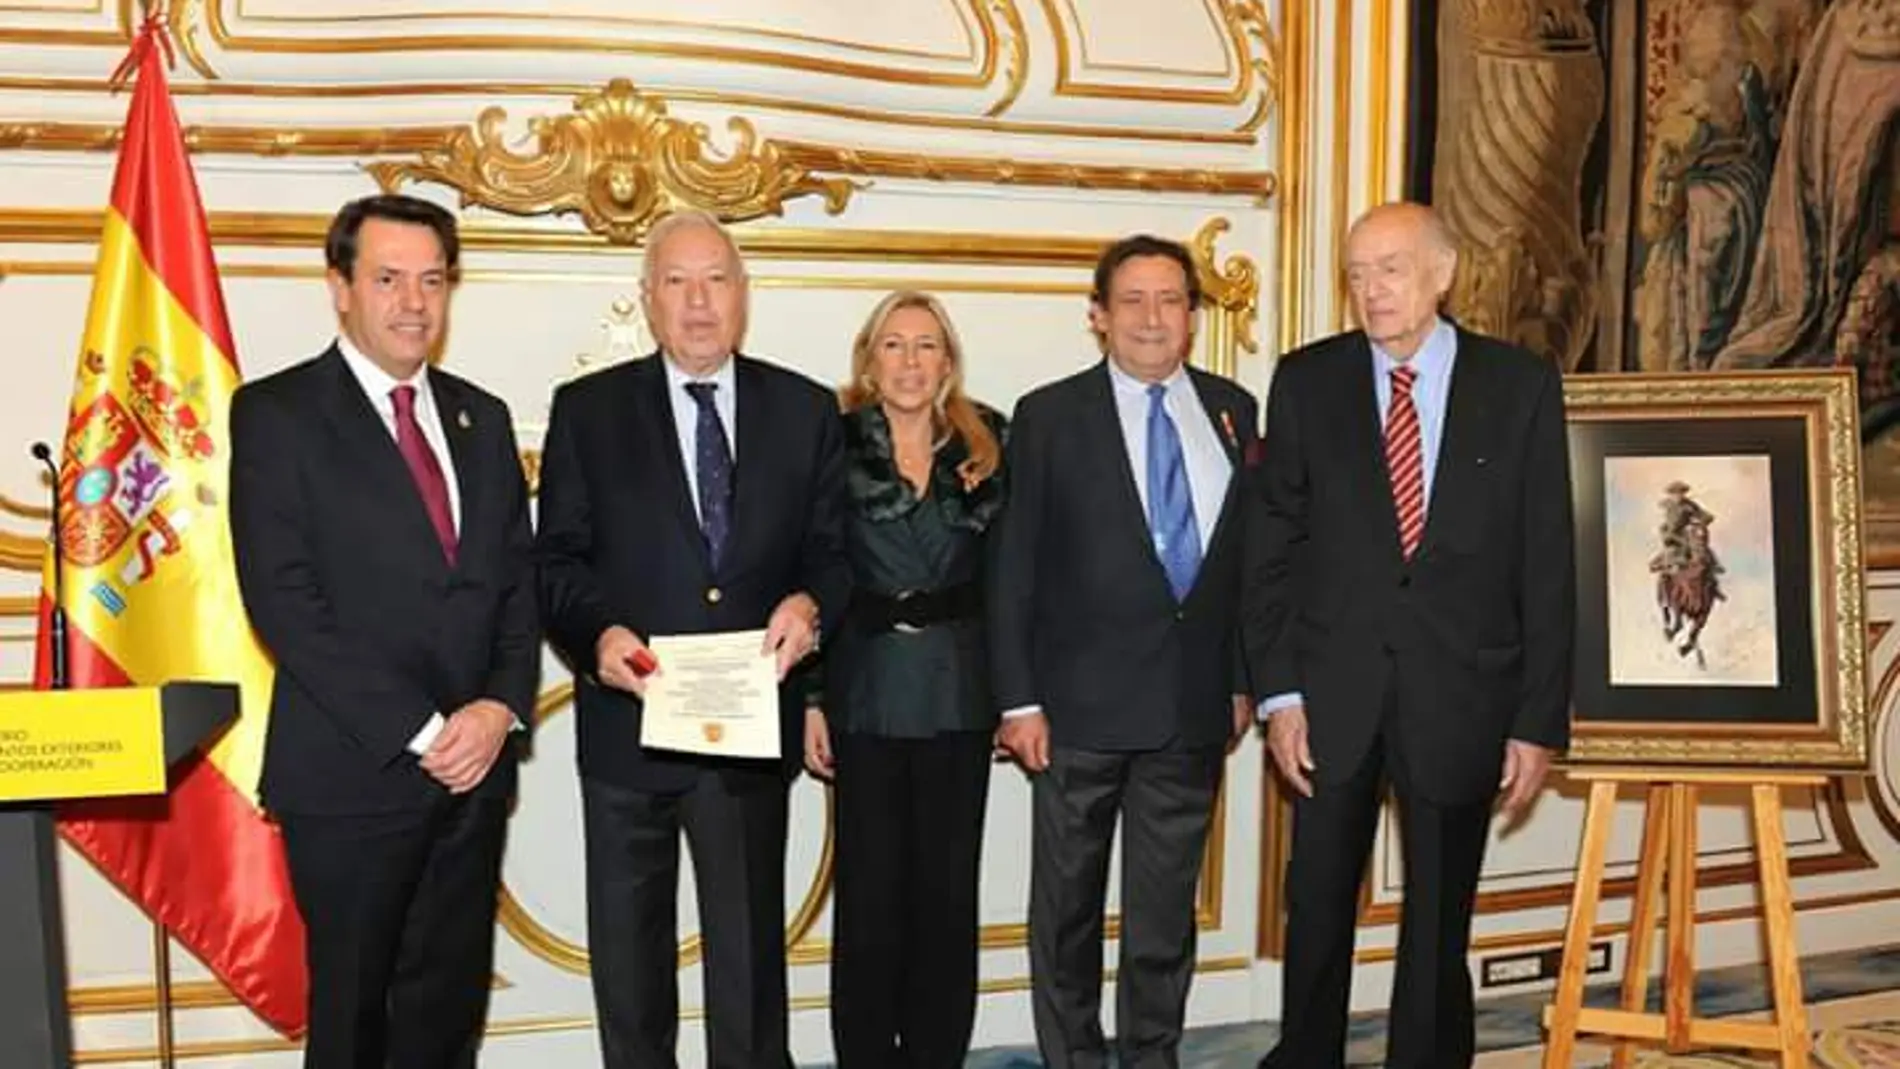 Augusto Ferrer Dalmau, Margallo, Sofia de Borbón (presidenta de la academia de la diplomacia ), Alfonso Ussia y el embajador S. Velo de Antelo